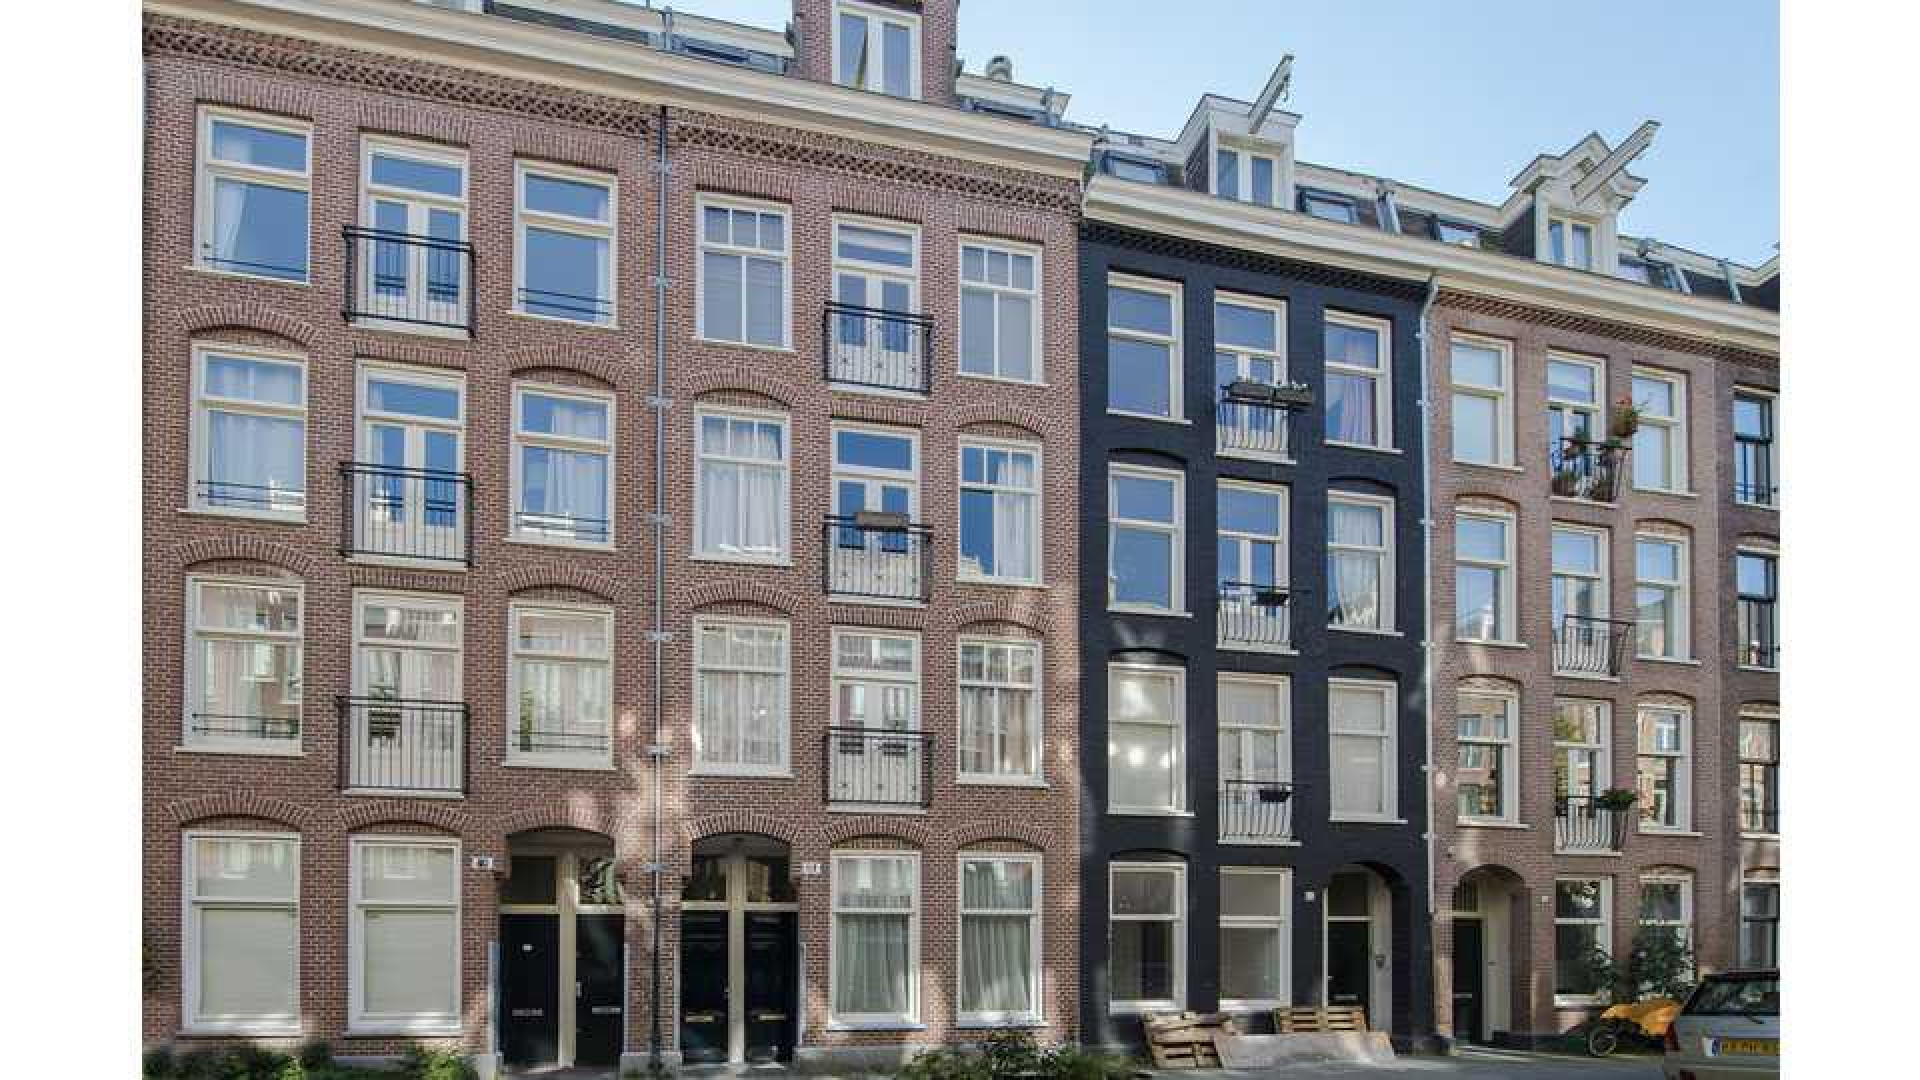 Armin van Buuren koopt luxe dubbel bovenhuis in Amsterdam Oud-West. Zie foto's 18